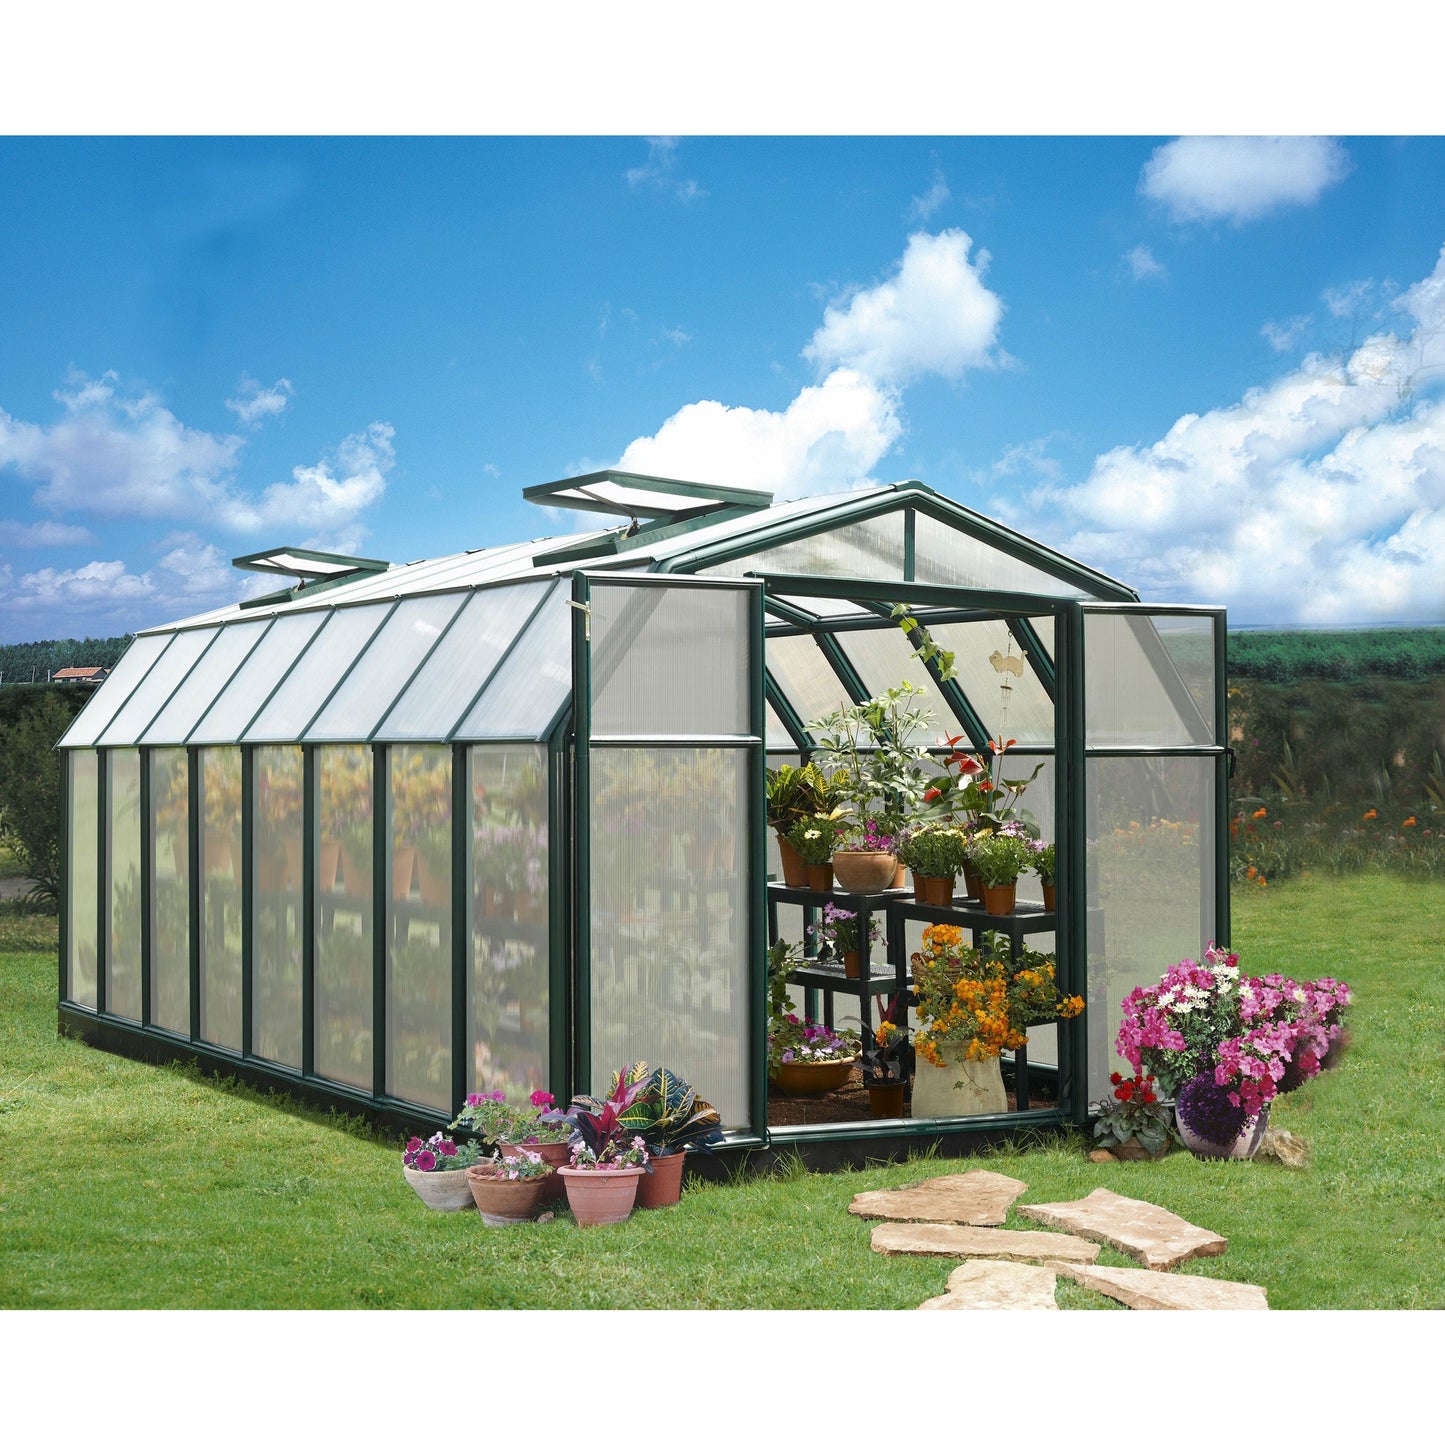 Rion Hobby Gardener 8' x 16' Greenhouse